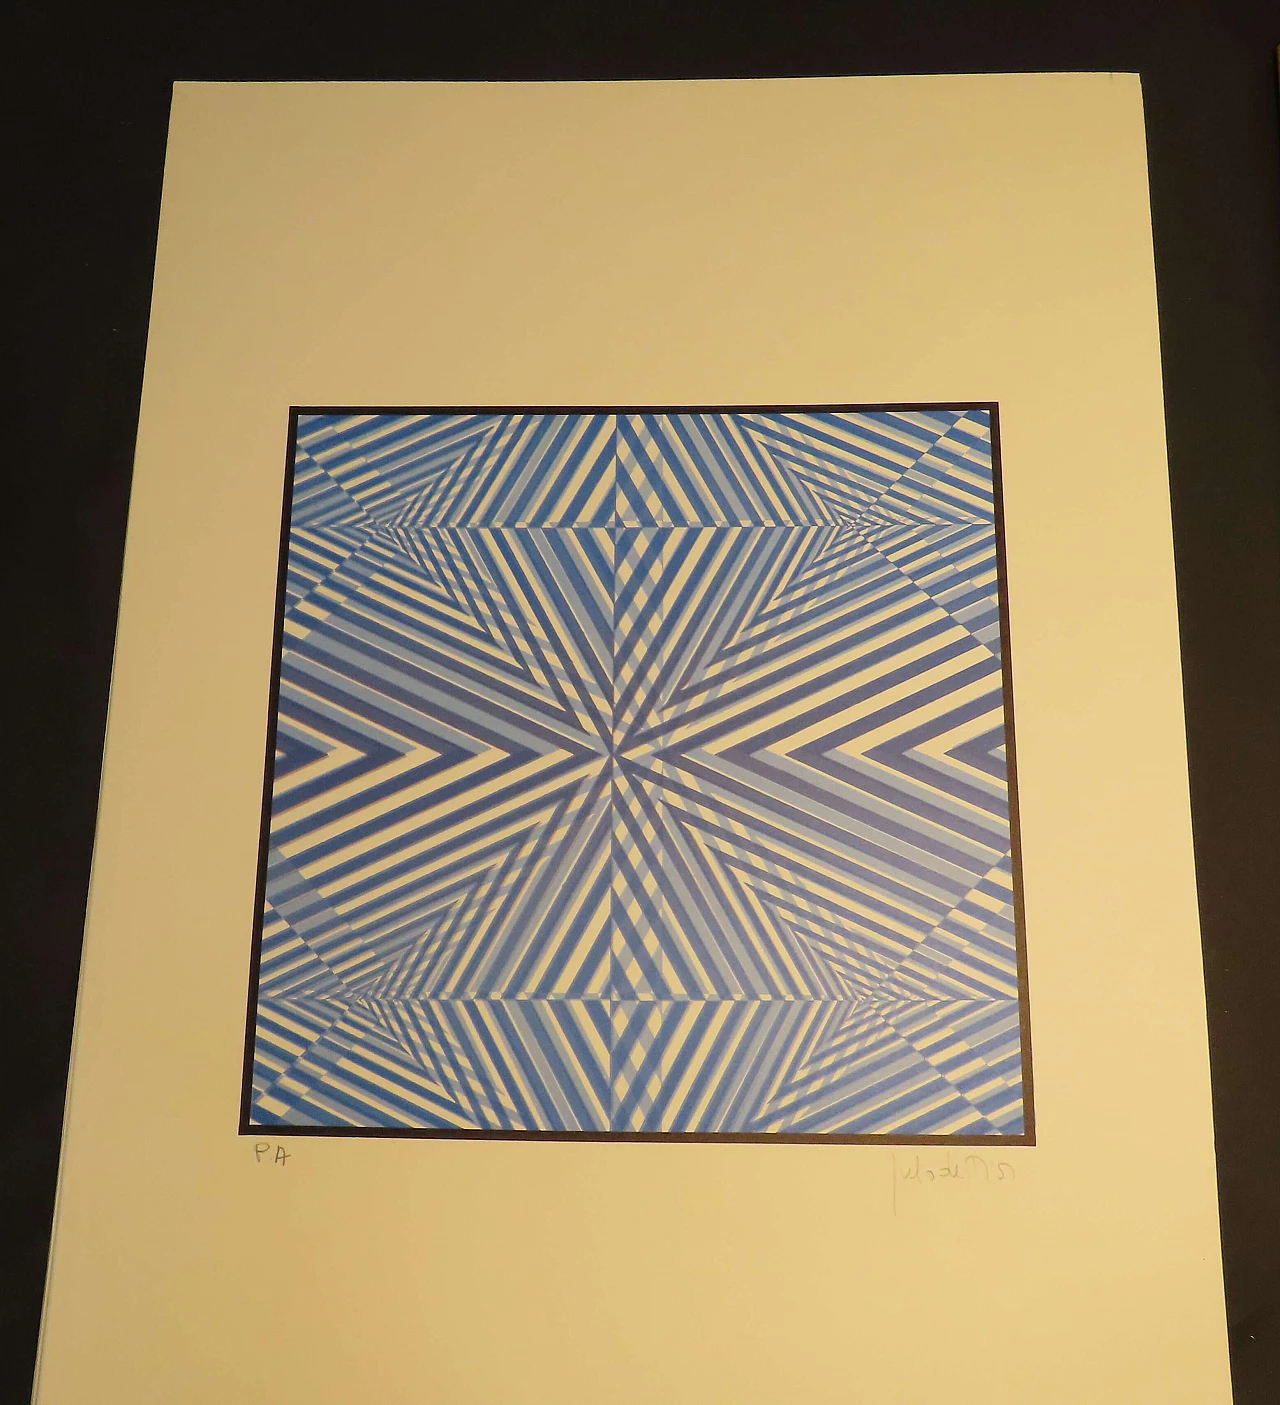 Julio de Dios, optical composition, lithography, 1979 2